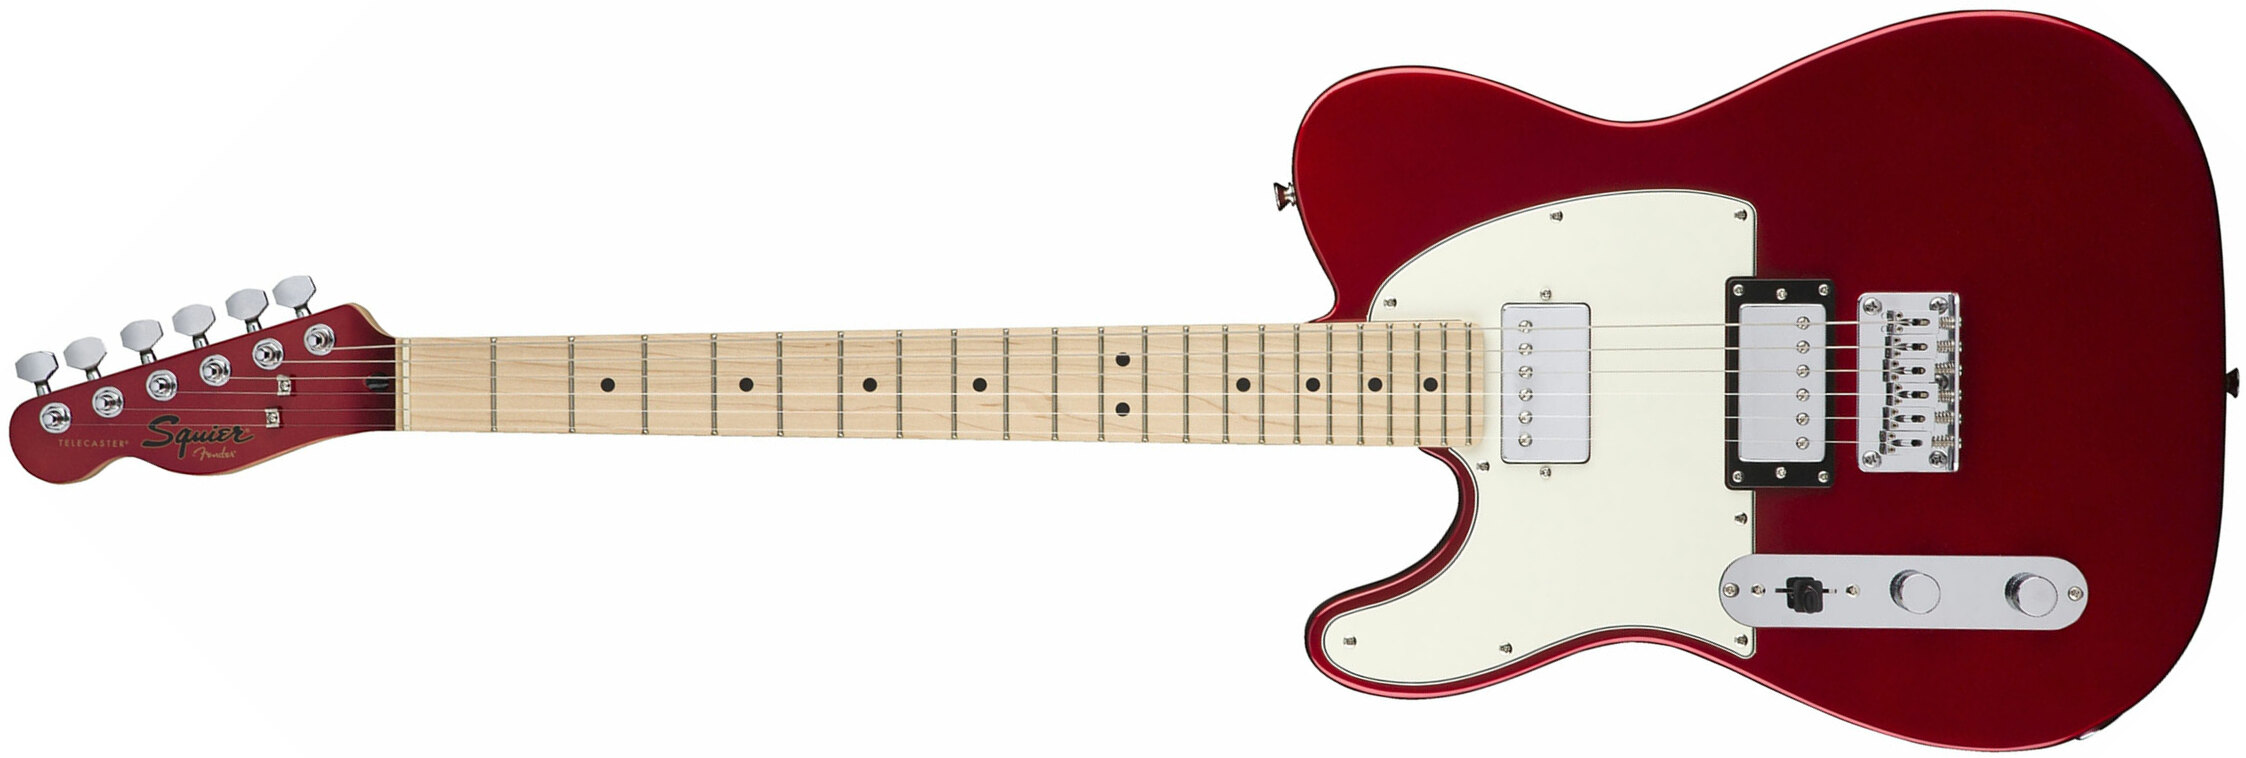 Squier Tele Contemporary Hh Lh Gaucher Mn - Dark Metallic Red - Linkshandige elektrische gitaar - Main picture